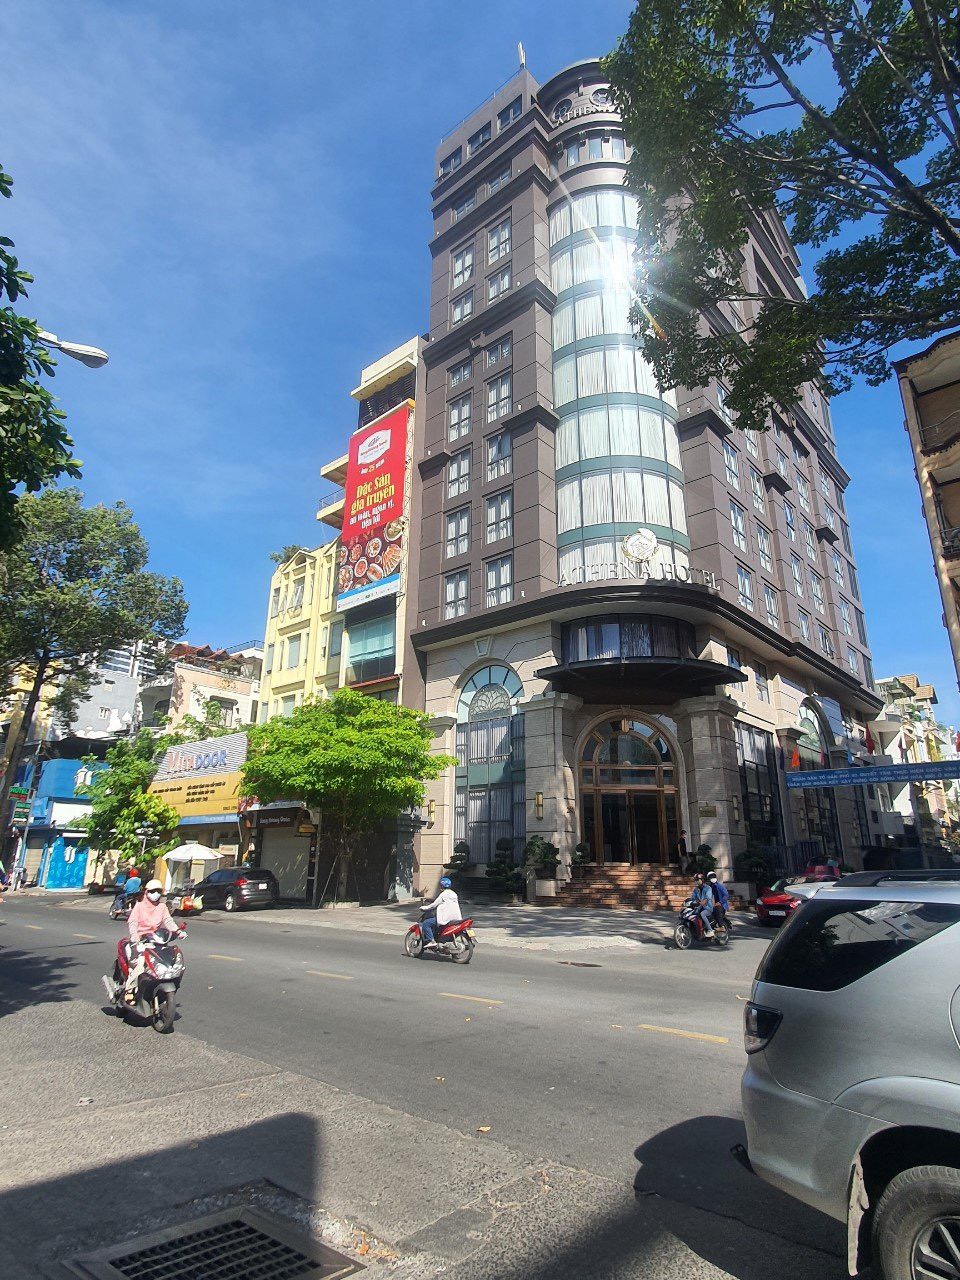 Bán nhà 2 mặt tiền Lê Đại Hành đối diện nhà thi đấu Phú Thọ, Q11. DT: 3.8x30m, 1 hầm 6 tầng